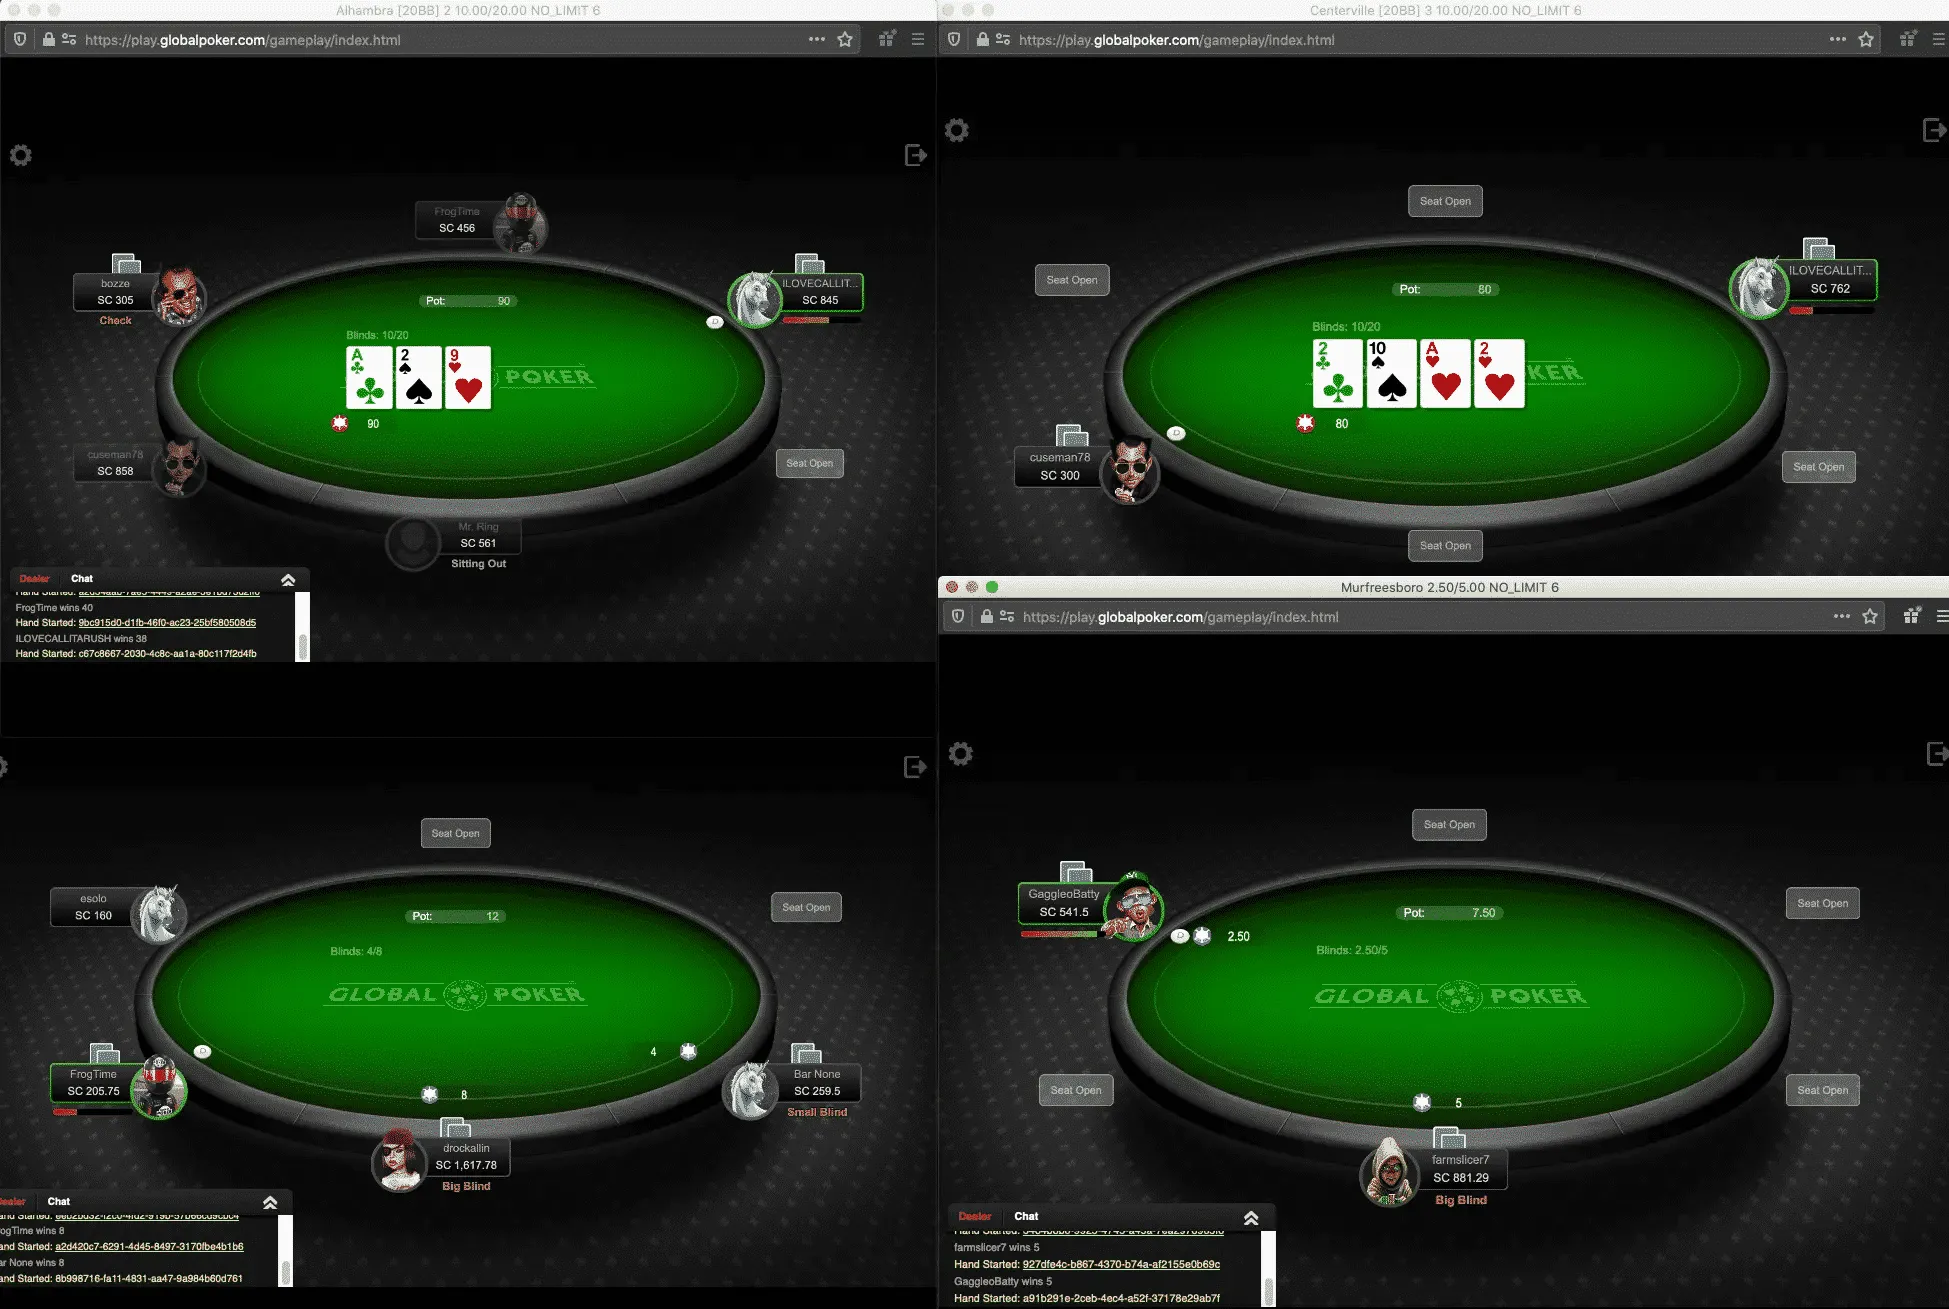 Global Poker multiple tables